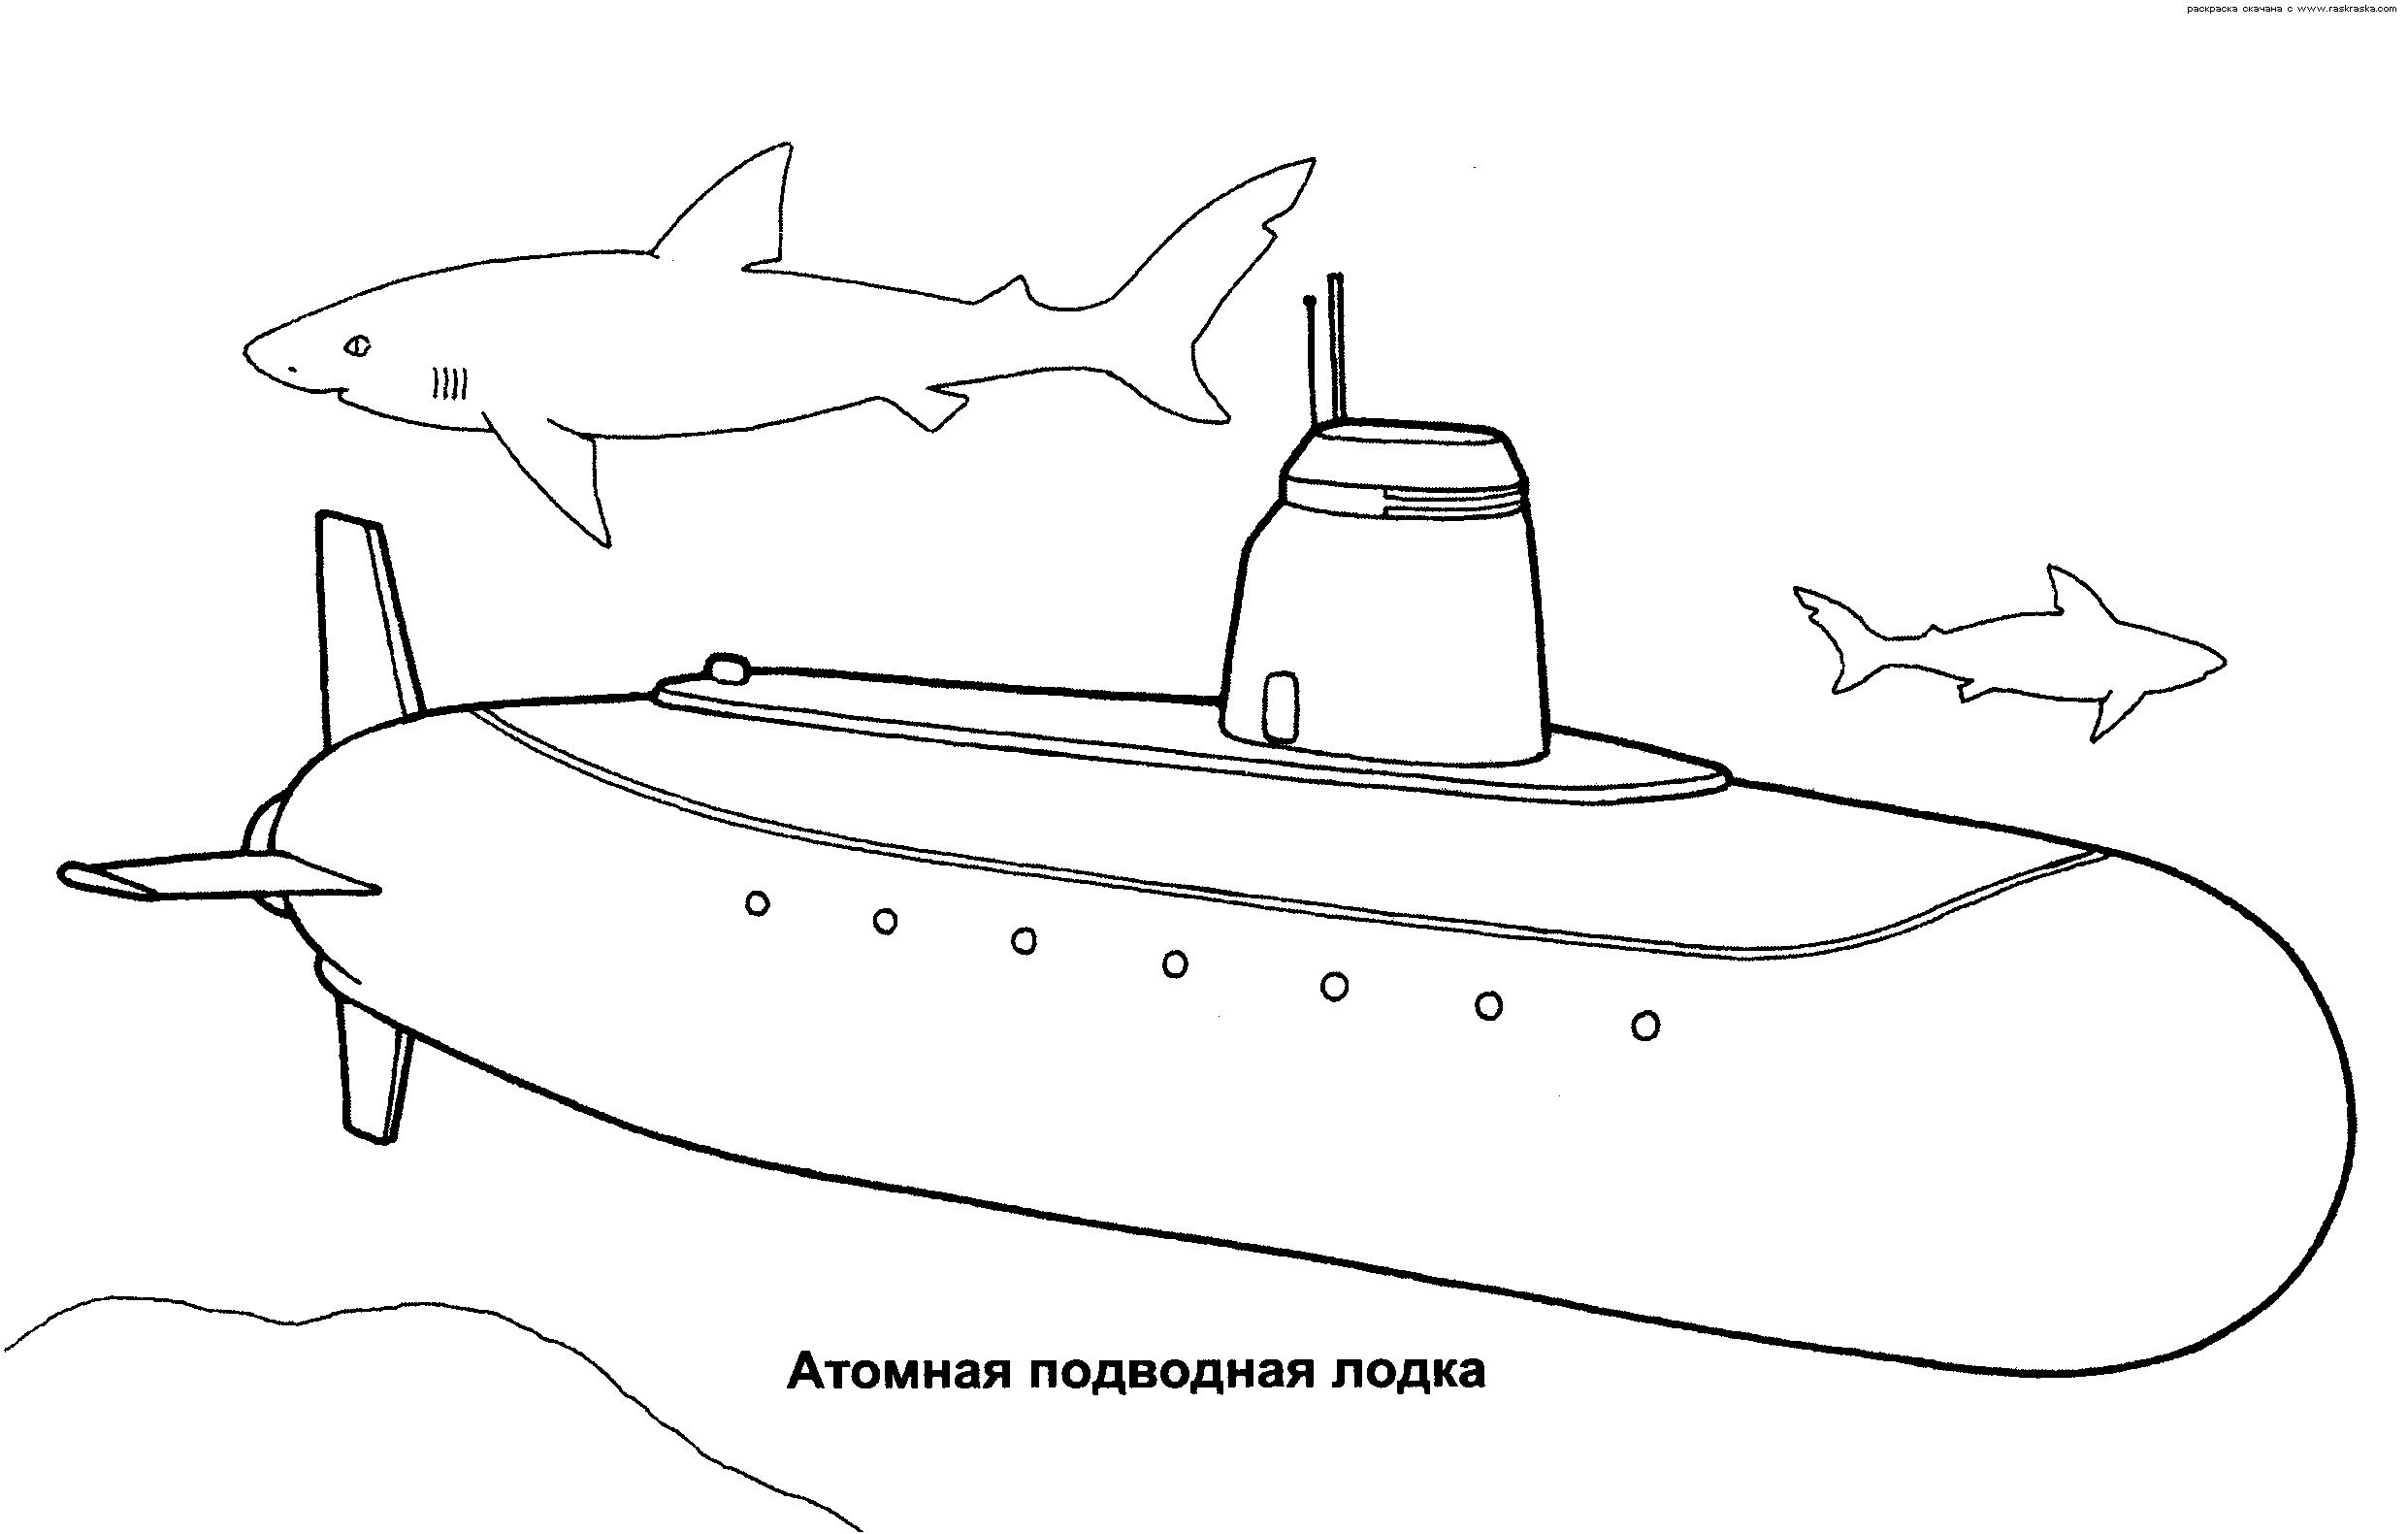 Розмальовки дітей Дитяча розфарбування, подводниймір, атомний підводний човен